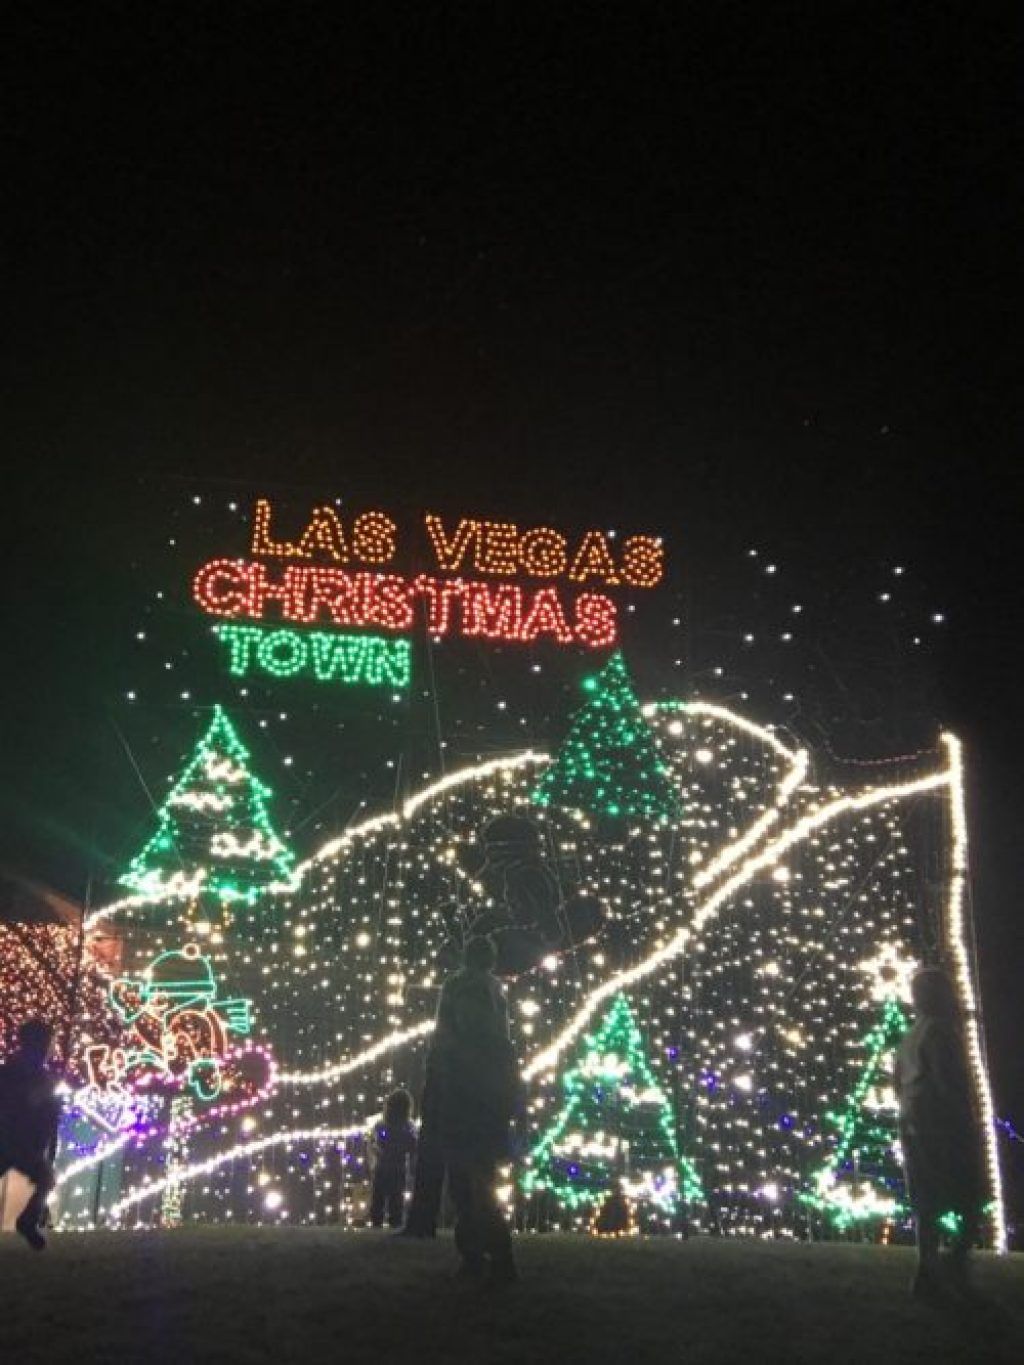 अमेरिका में लास वेगास, नेवादा क्रिसमस शहर